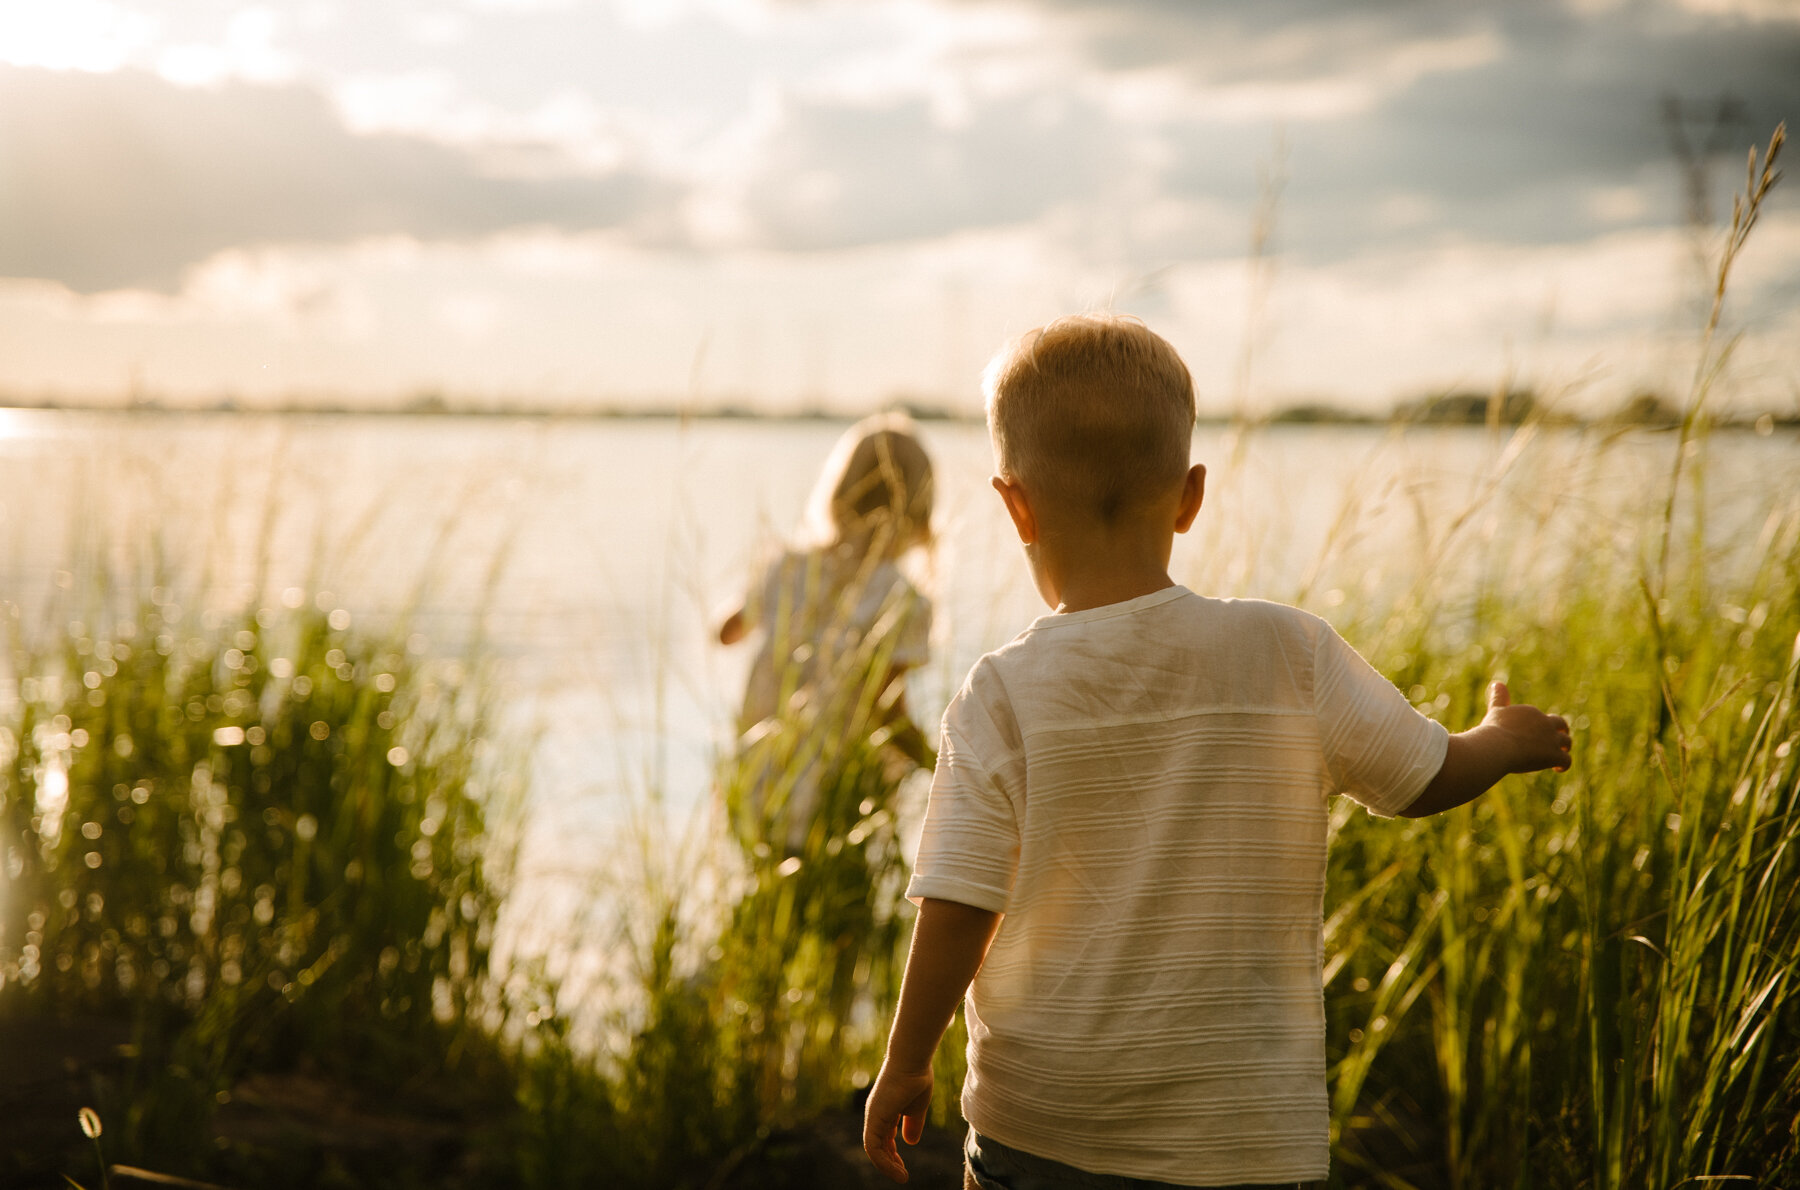 075photo-deux-enfants-traversent-les-herbes-hautes-sur-le-bord-du-fleuve-photographe-de-famille-a-montreal-marianne-charland-089.jpg